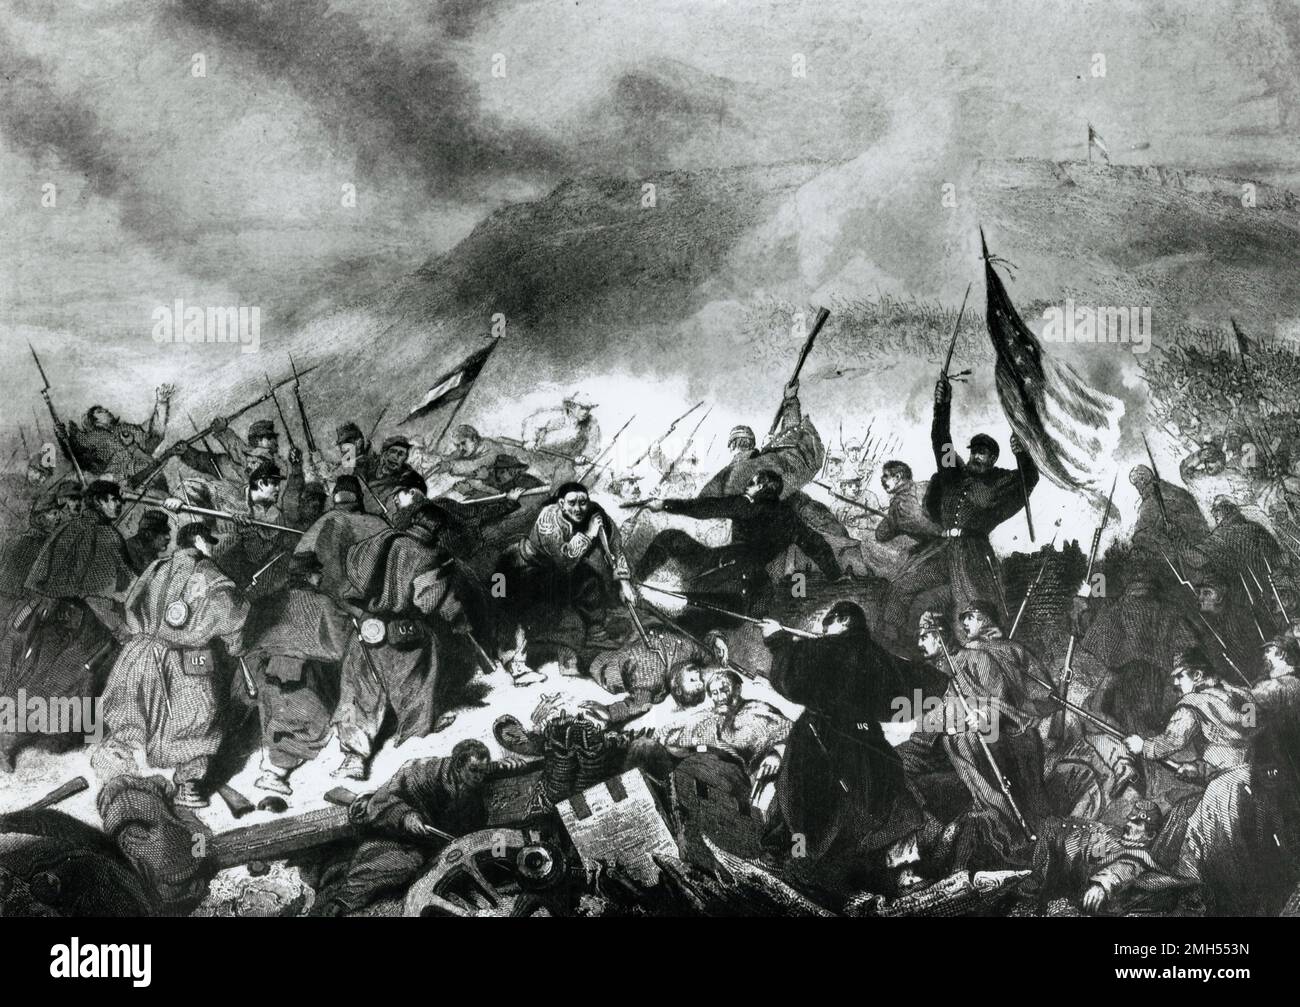 La Batalla de Fort Donelson fue una batalla en la Guerra Civil Americana que se libró del 11 al 12th de febrero de 1862 en Kentucky. Fue un ataque anfibio unionista al Fuerte Donelson bajo el mando de Ulysses Grant, y fue una victoria unionista cuando el fuerte fue capturado. Foto de stock